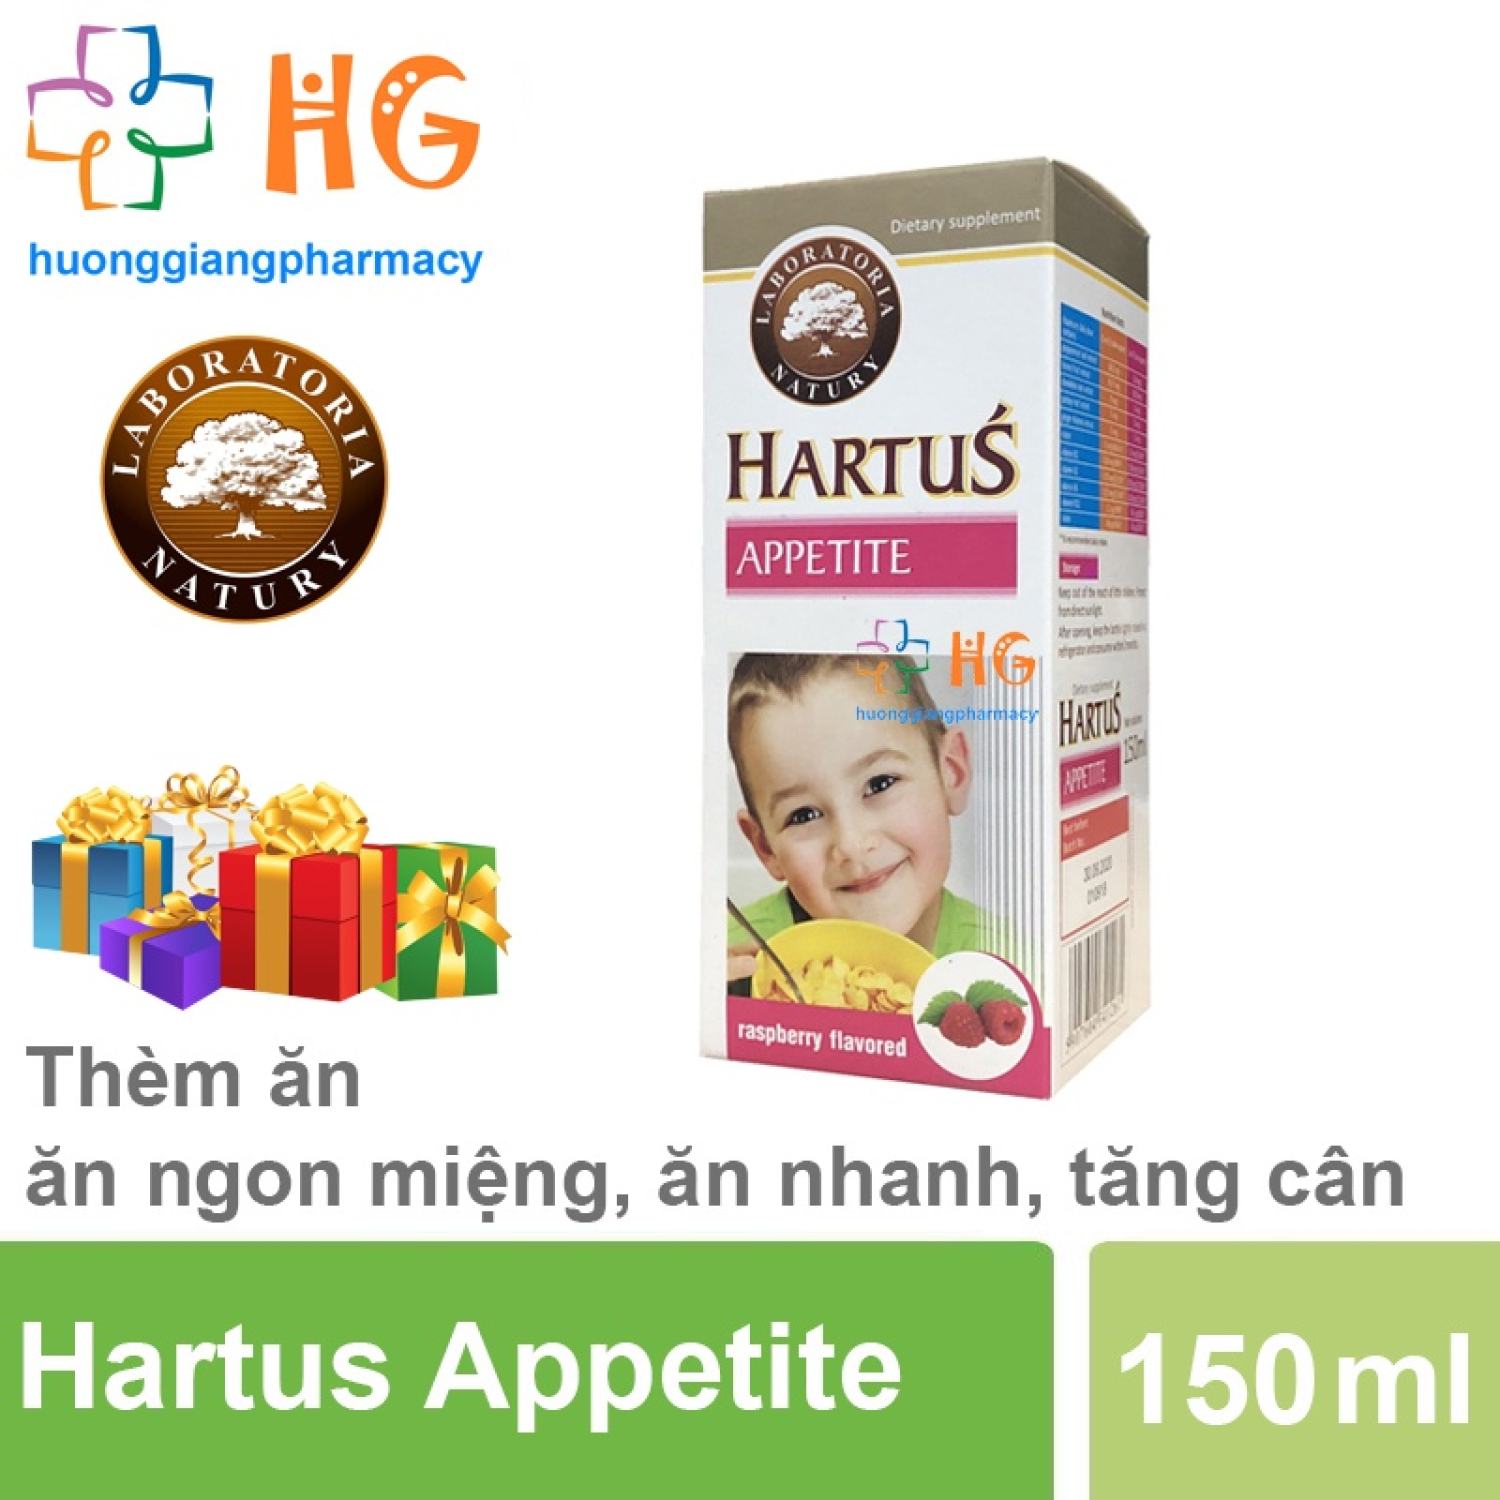 Hartus Appetite, siro ăn ngon cho bé, cải thiện chứng biếng ăn